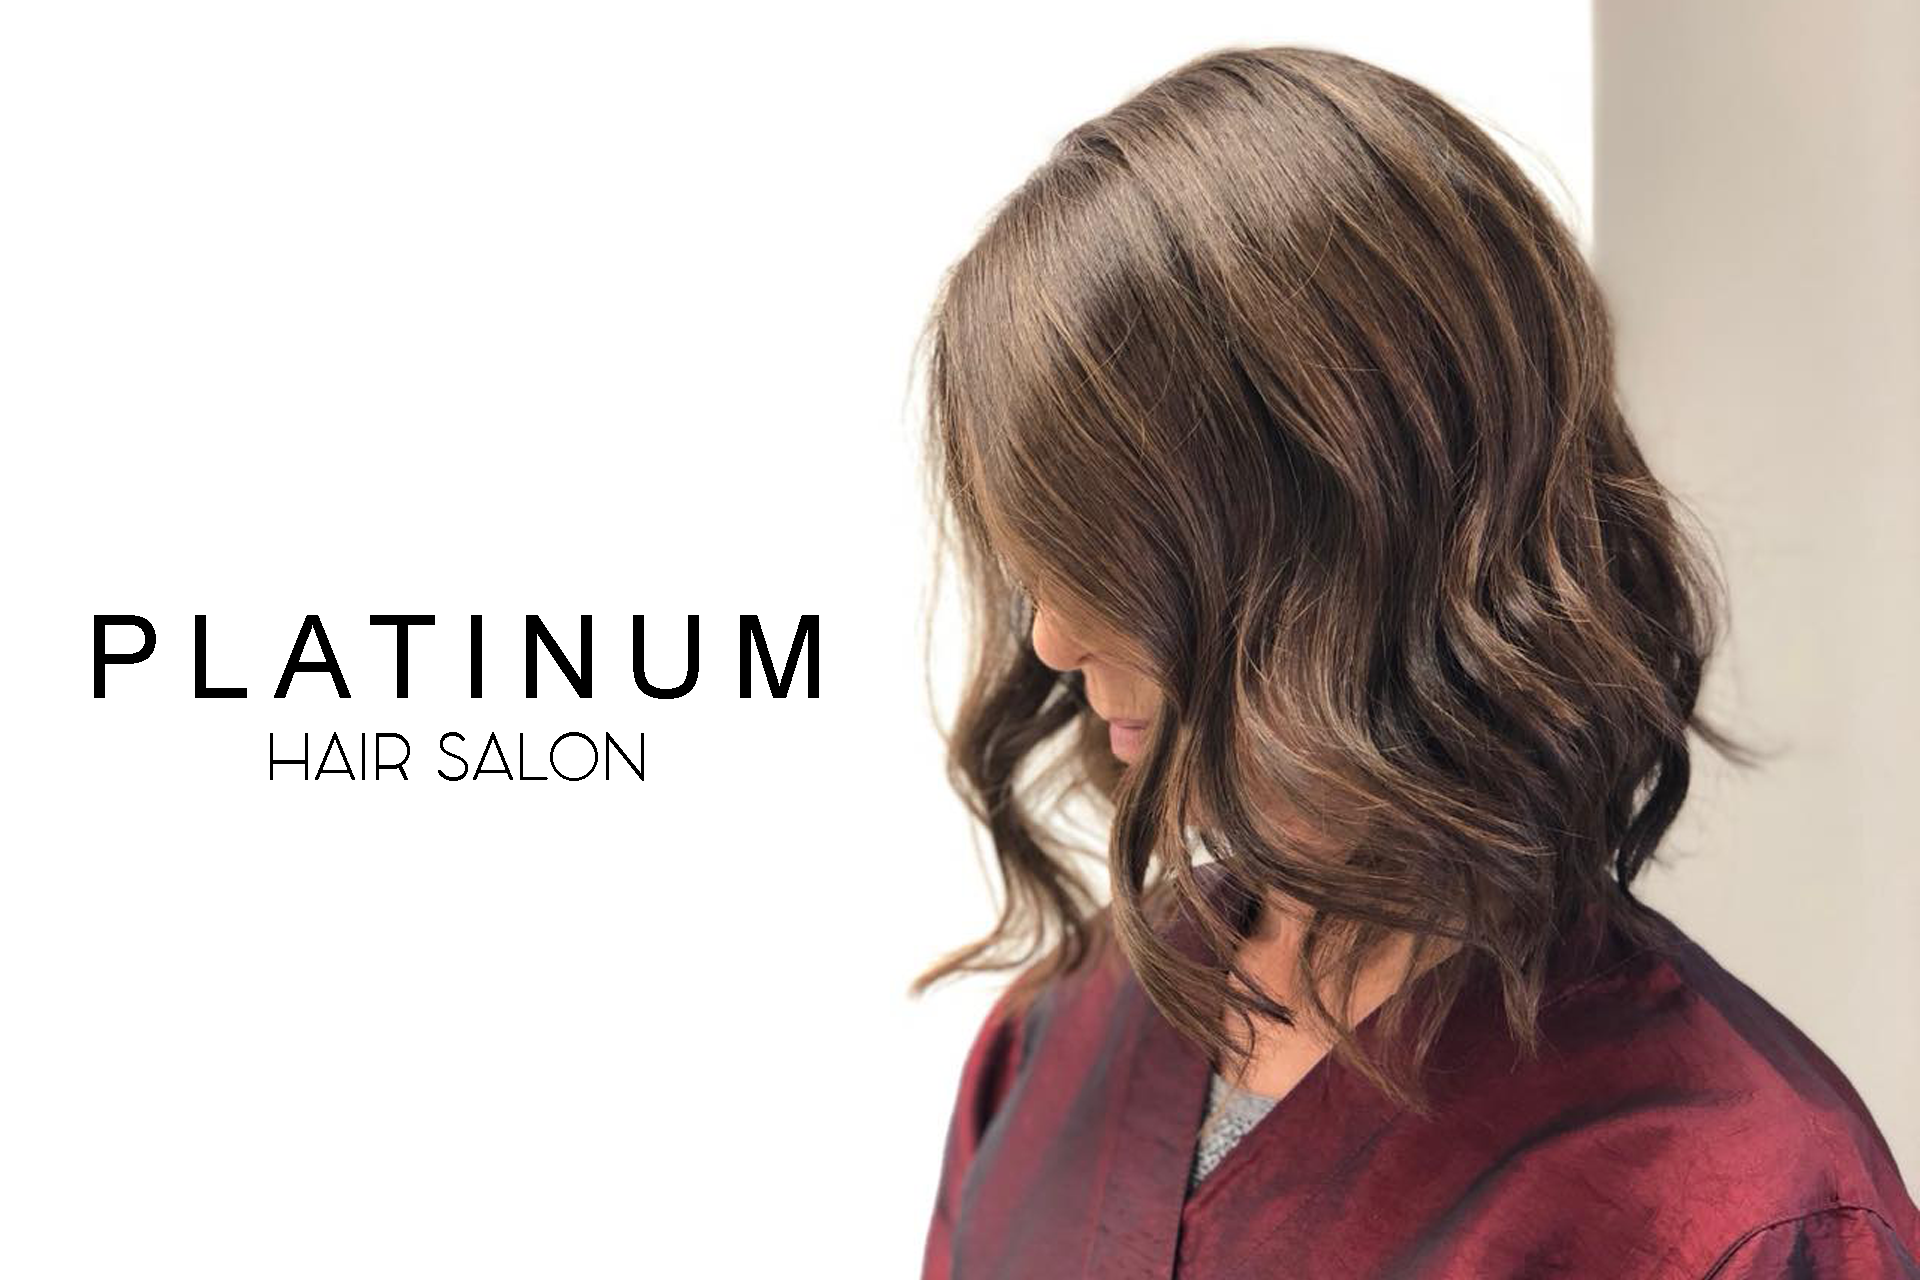 Platinum Hair Salon